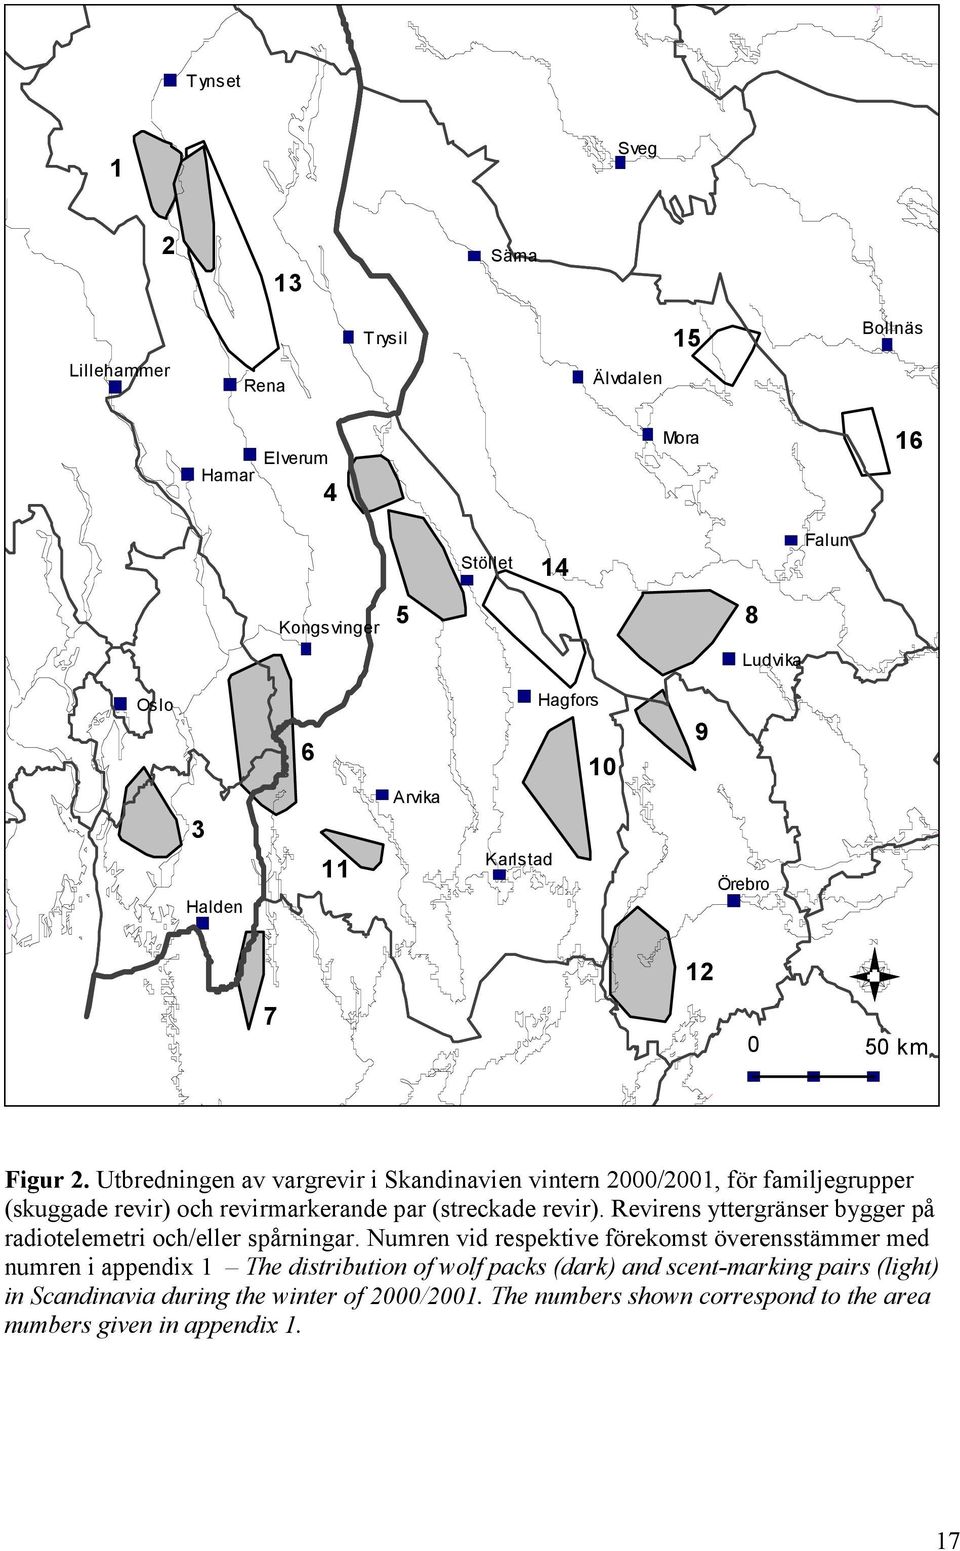 Utbredningen av vargrevir i Skandinavien vintern 2000/2001, för familjegrupper (skuggade revir) och revirmarkerande par (streckade revir).